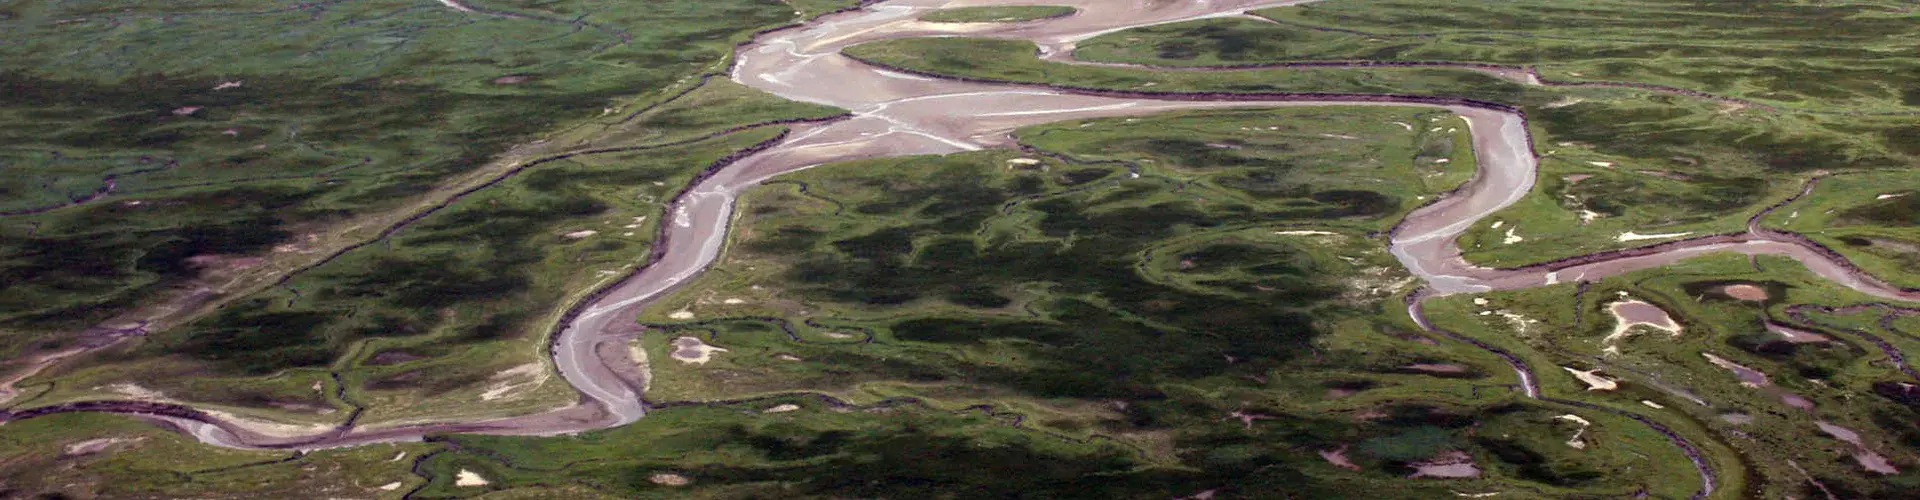 Aerial photograph of flooded land in the Saeftinghe region, southwestern Netherlands (Credit: A. de Kraker)